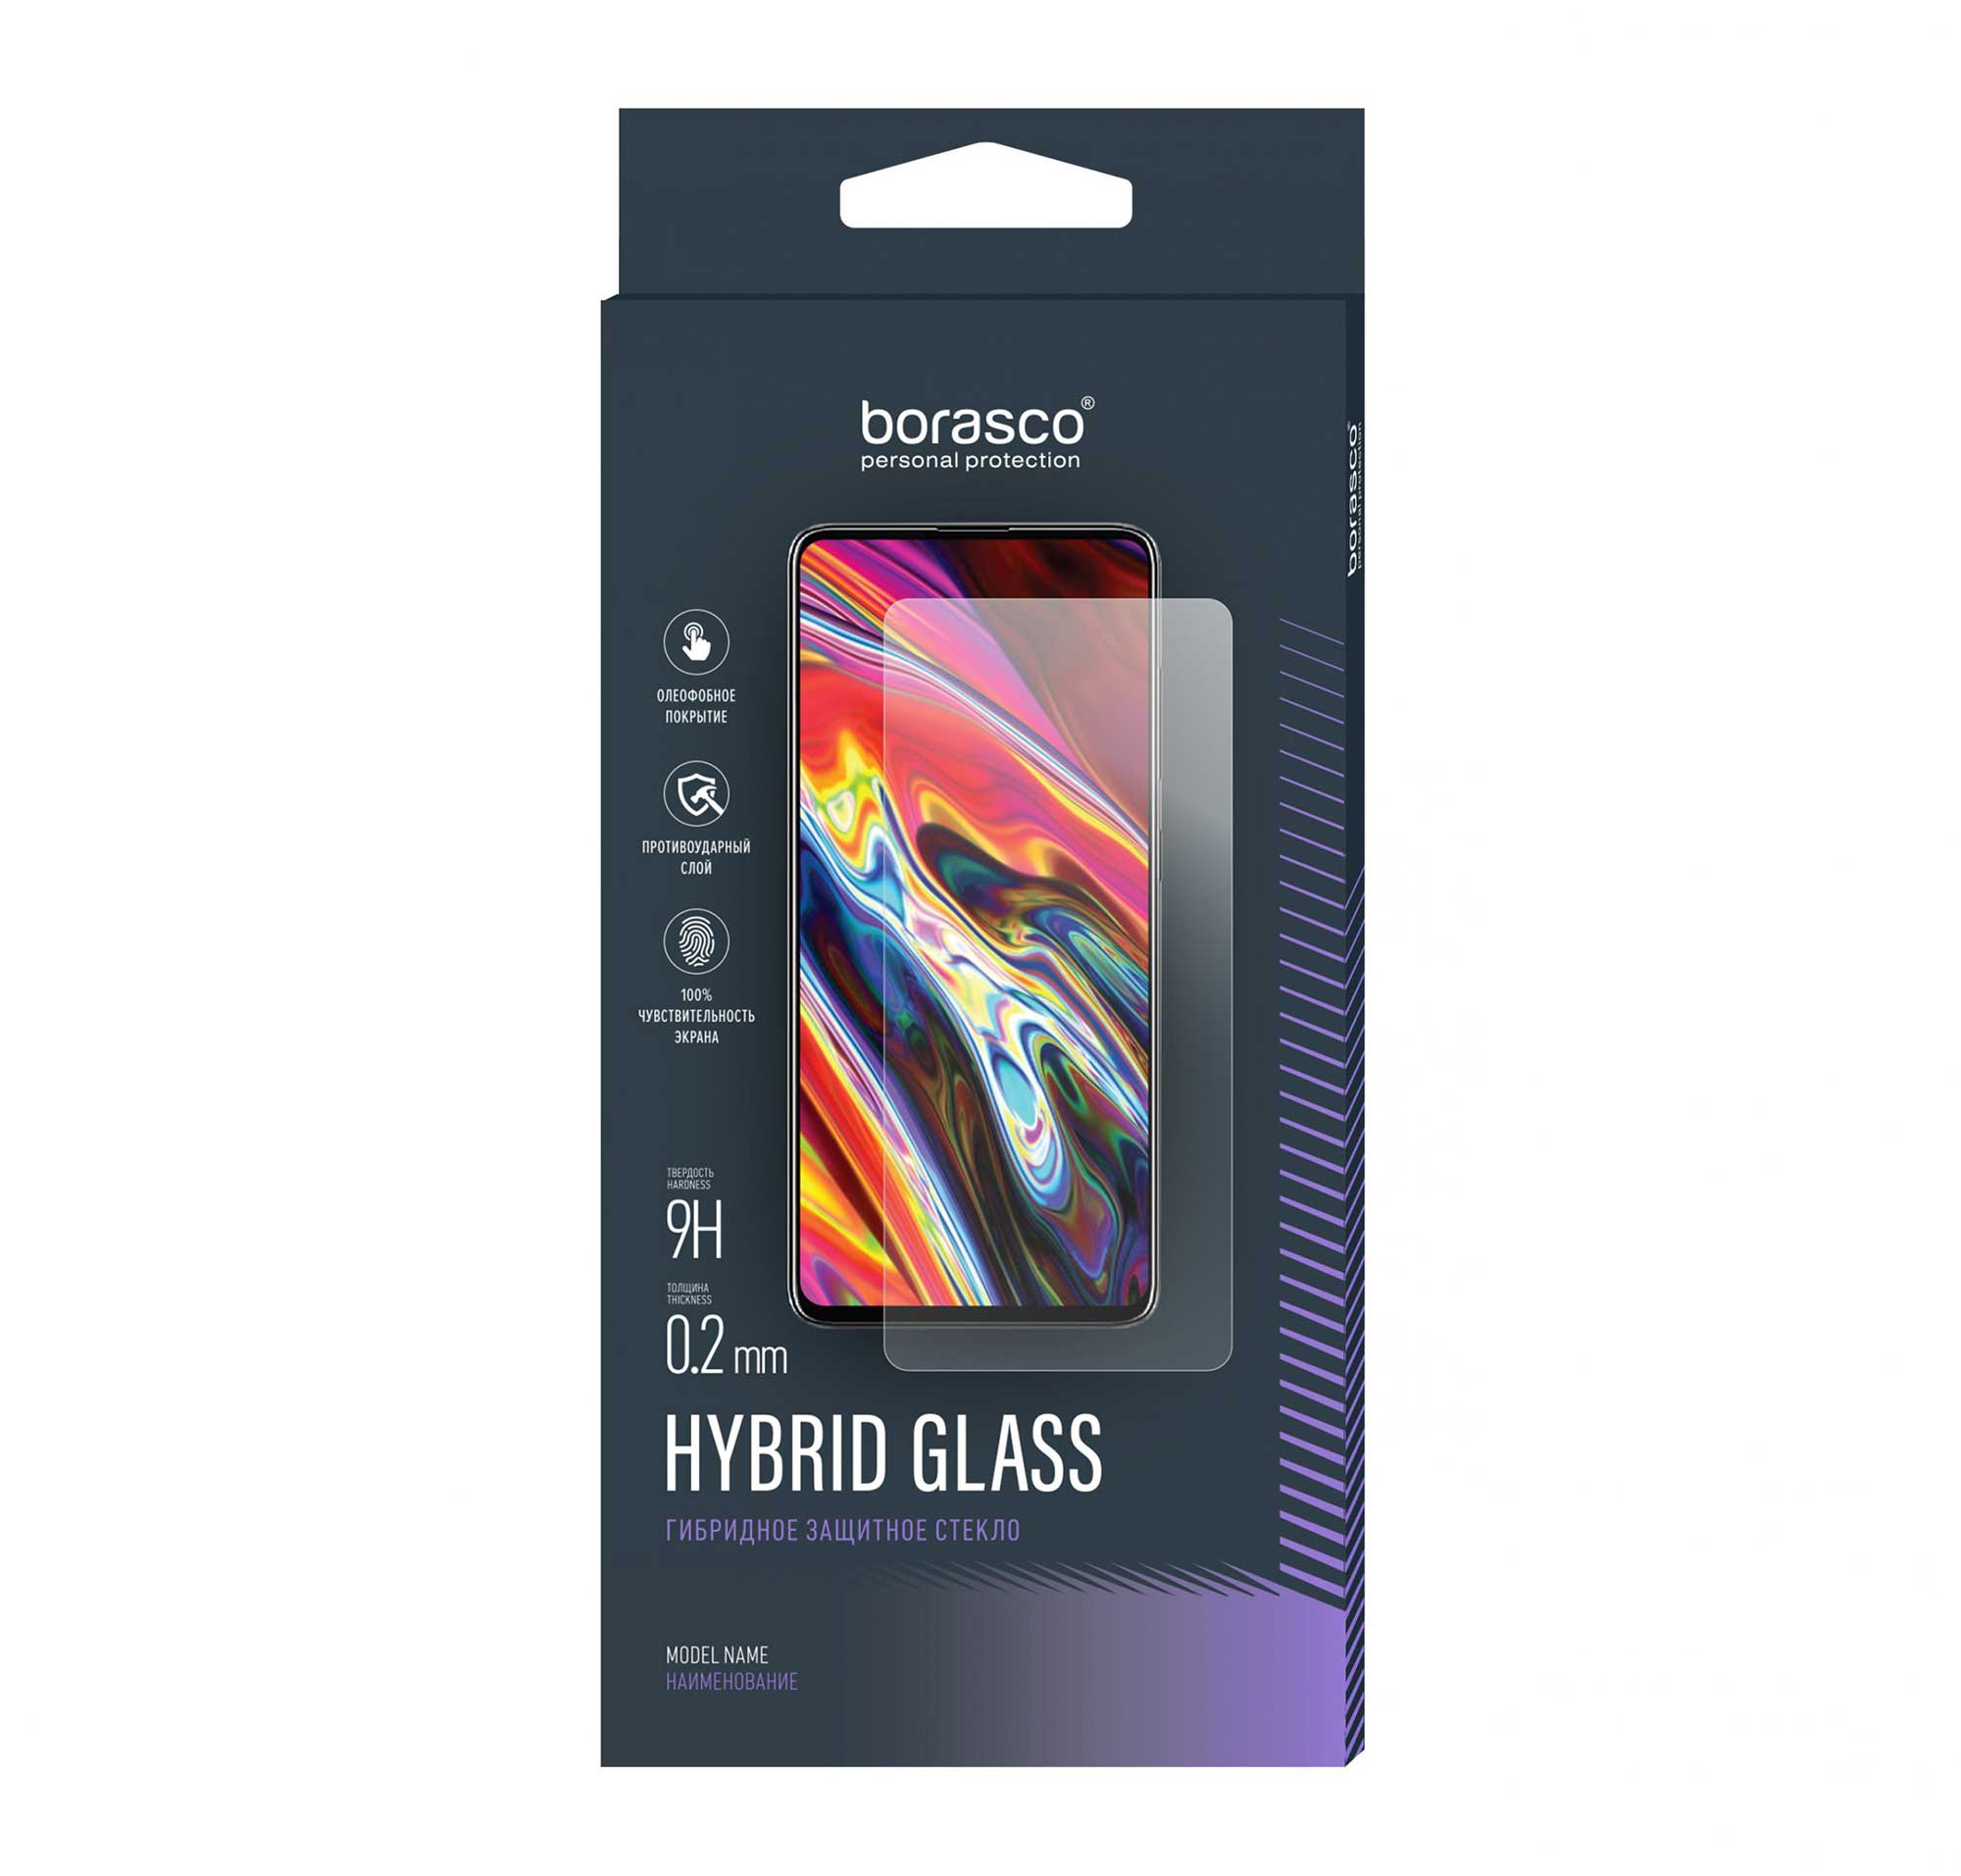 Защитное стекло BoraSCO Hybrid Glass для BQ 4030G NICE MINI защитное стекло для bq 4030g nice mini